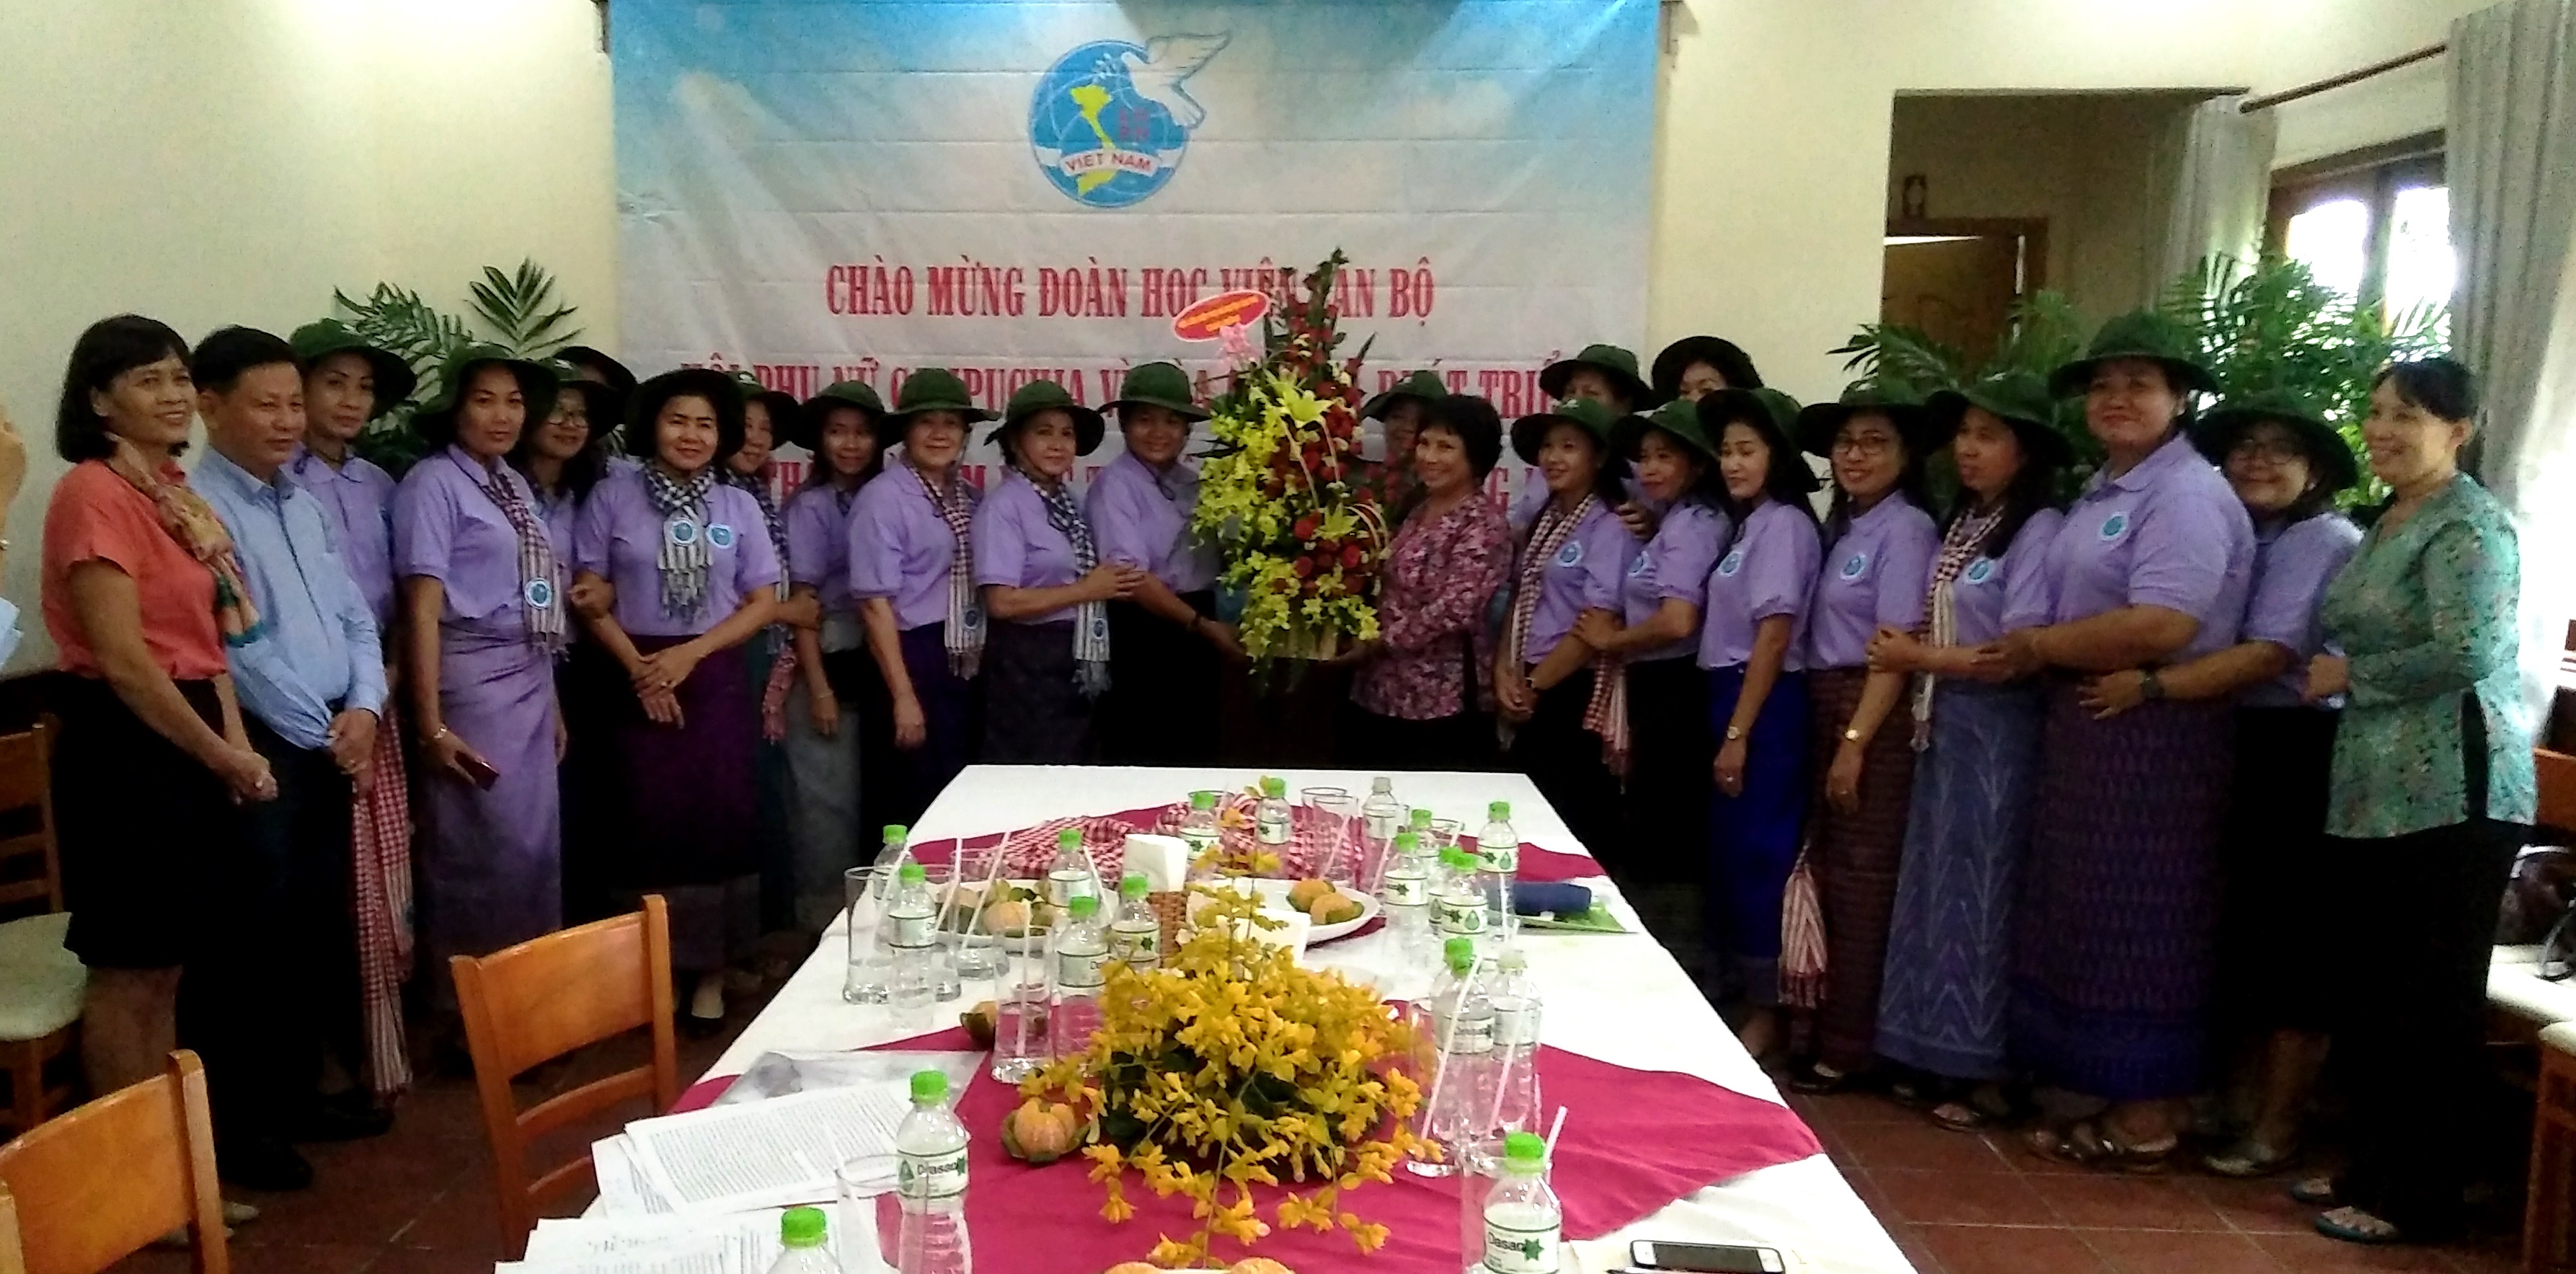 Cán bộ Hội Phụ nữ huyện chụp hình lưu niệm cùng Đoàn cán bộ Phụ nữ Vương quốc Campuchia.jpg